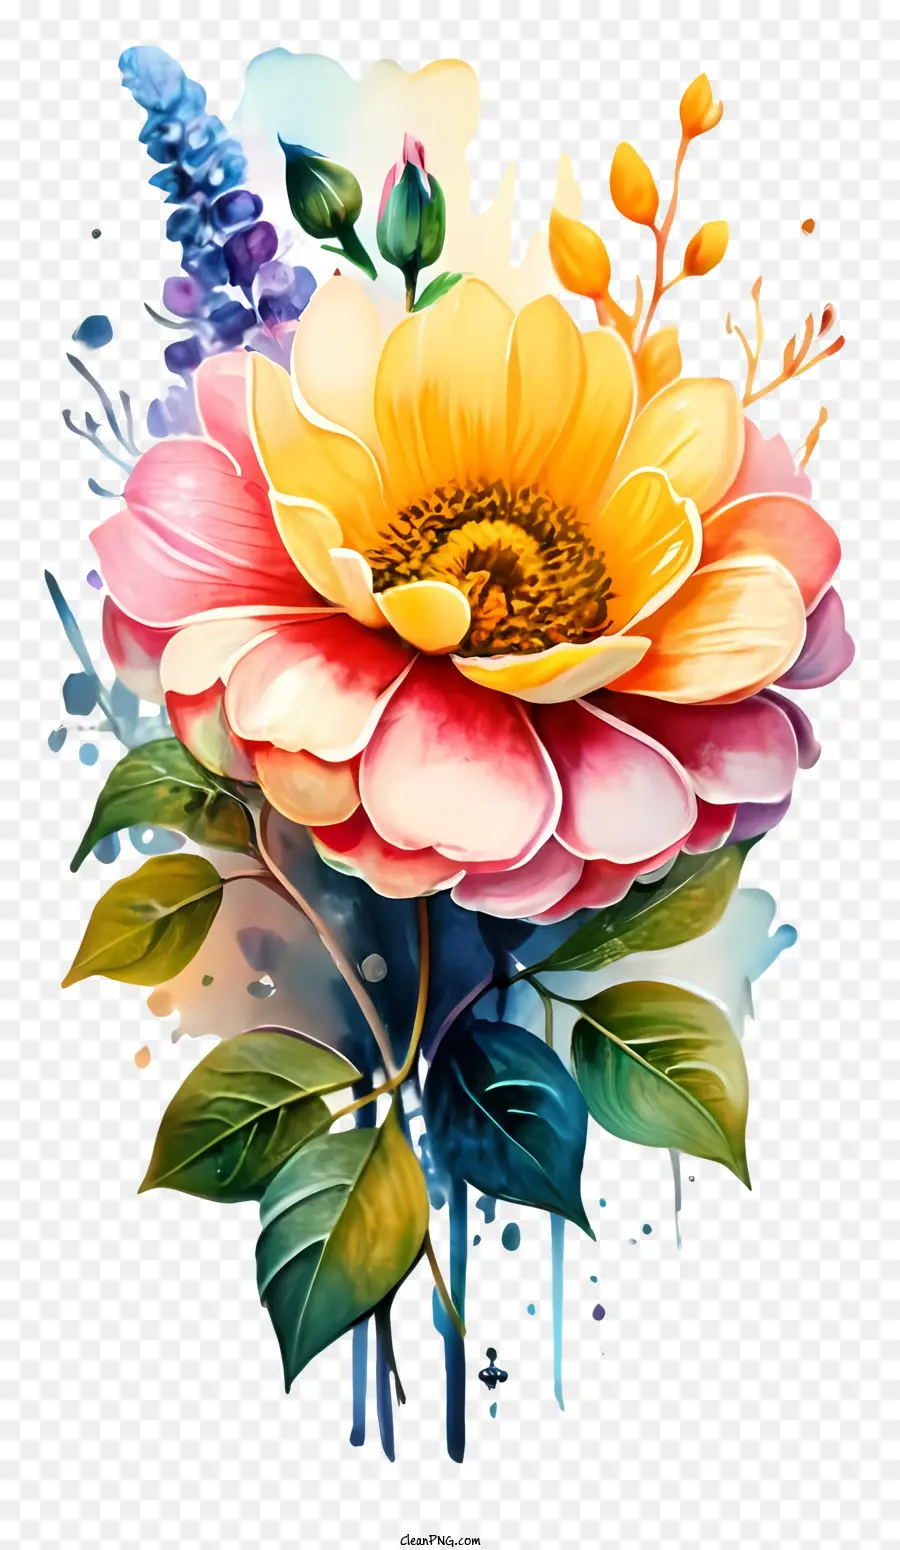 Blume Malerei - Lebendiges Sonnenblumenmalerei mit blauen Tröpfchen, impressionistischer Stil